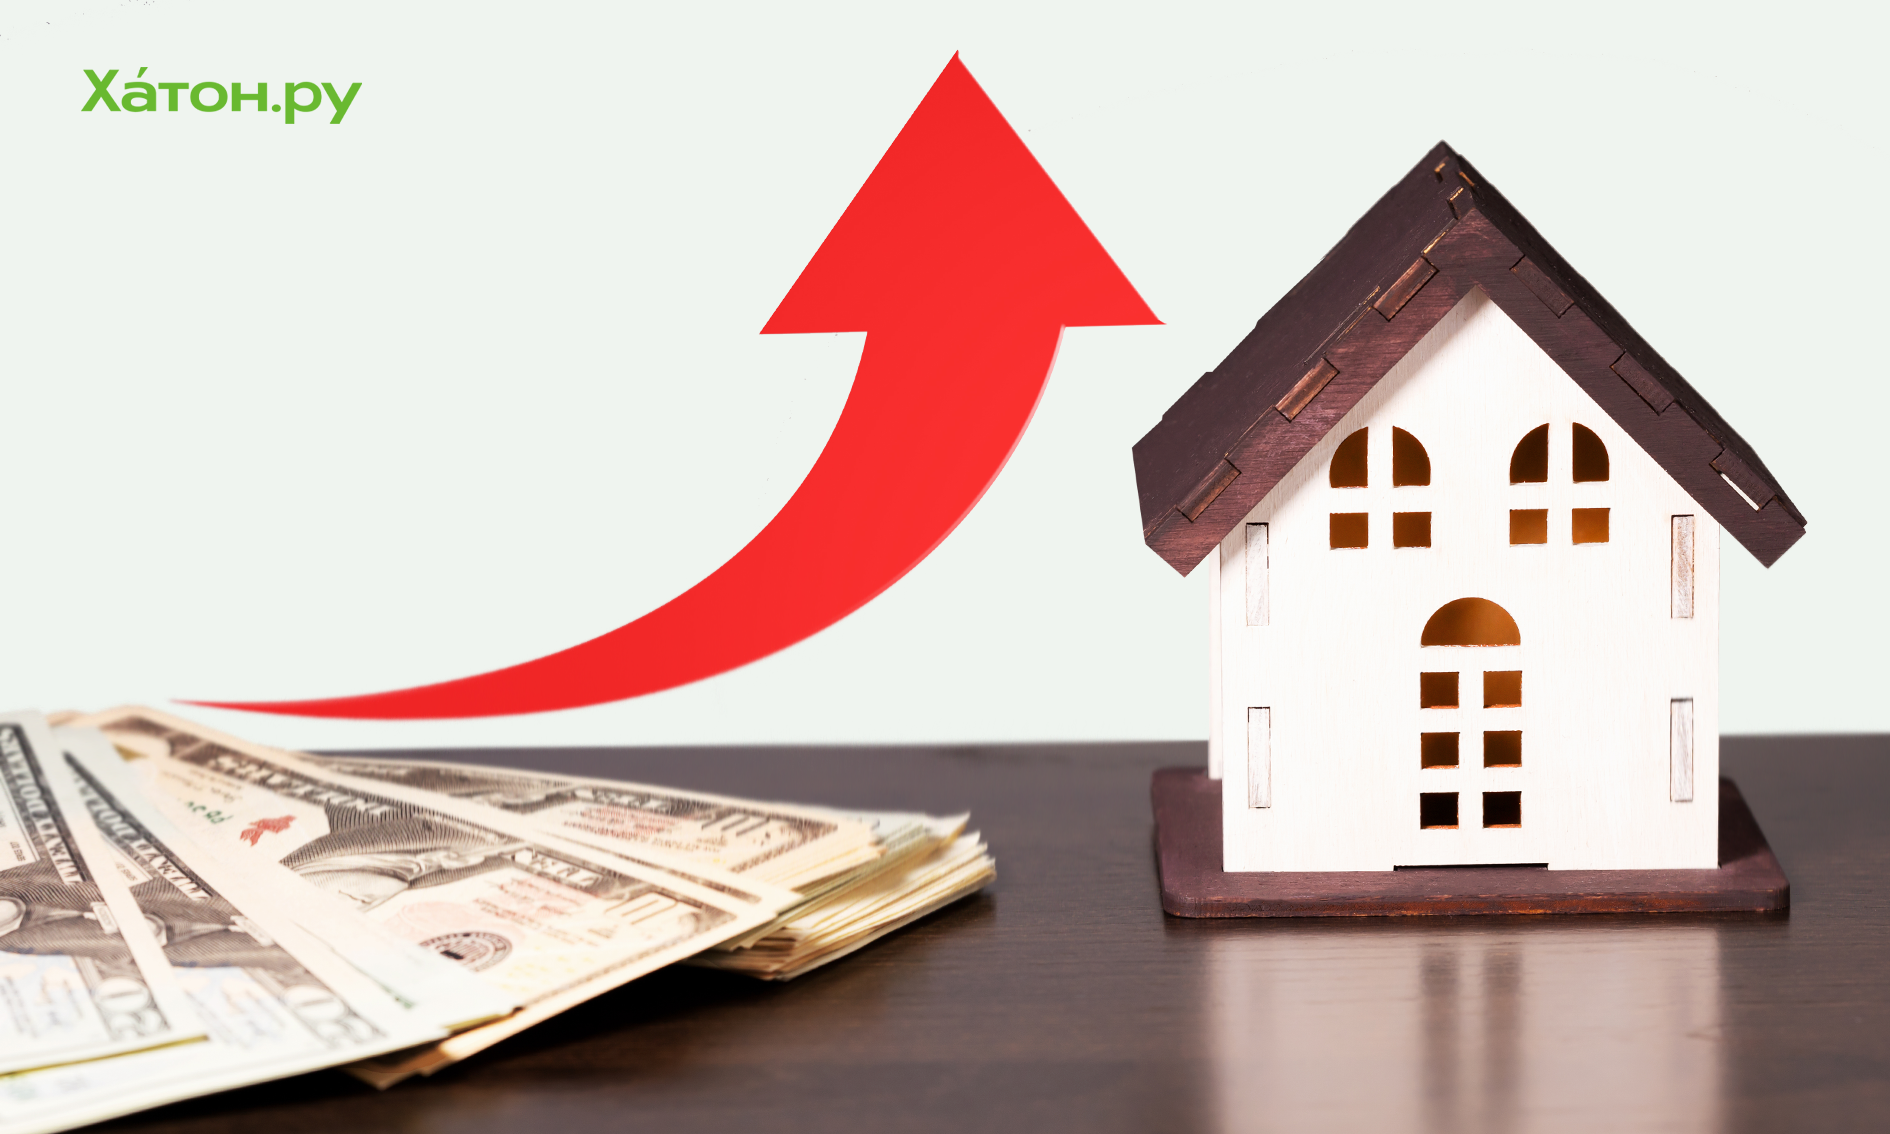 Цена квартиры в ипотеку с околонулевой ставкой может быть завышена на 35%